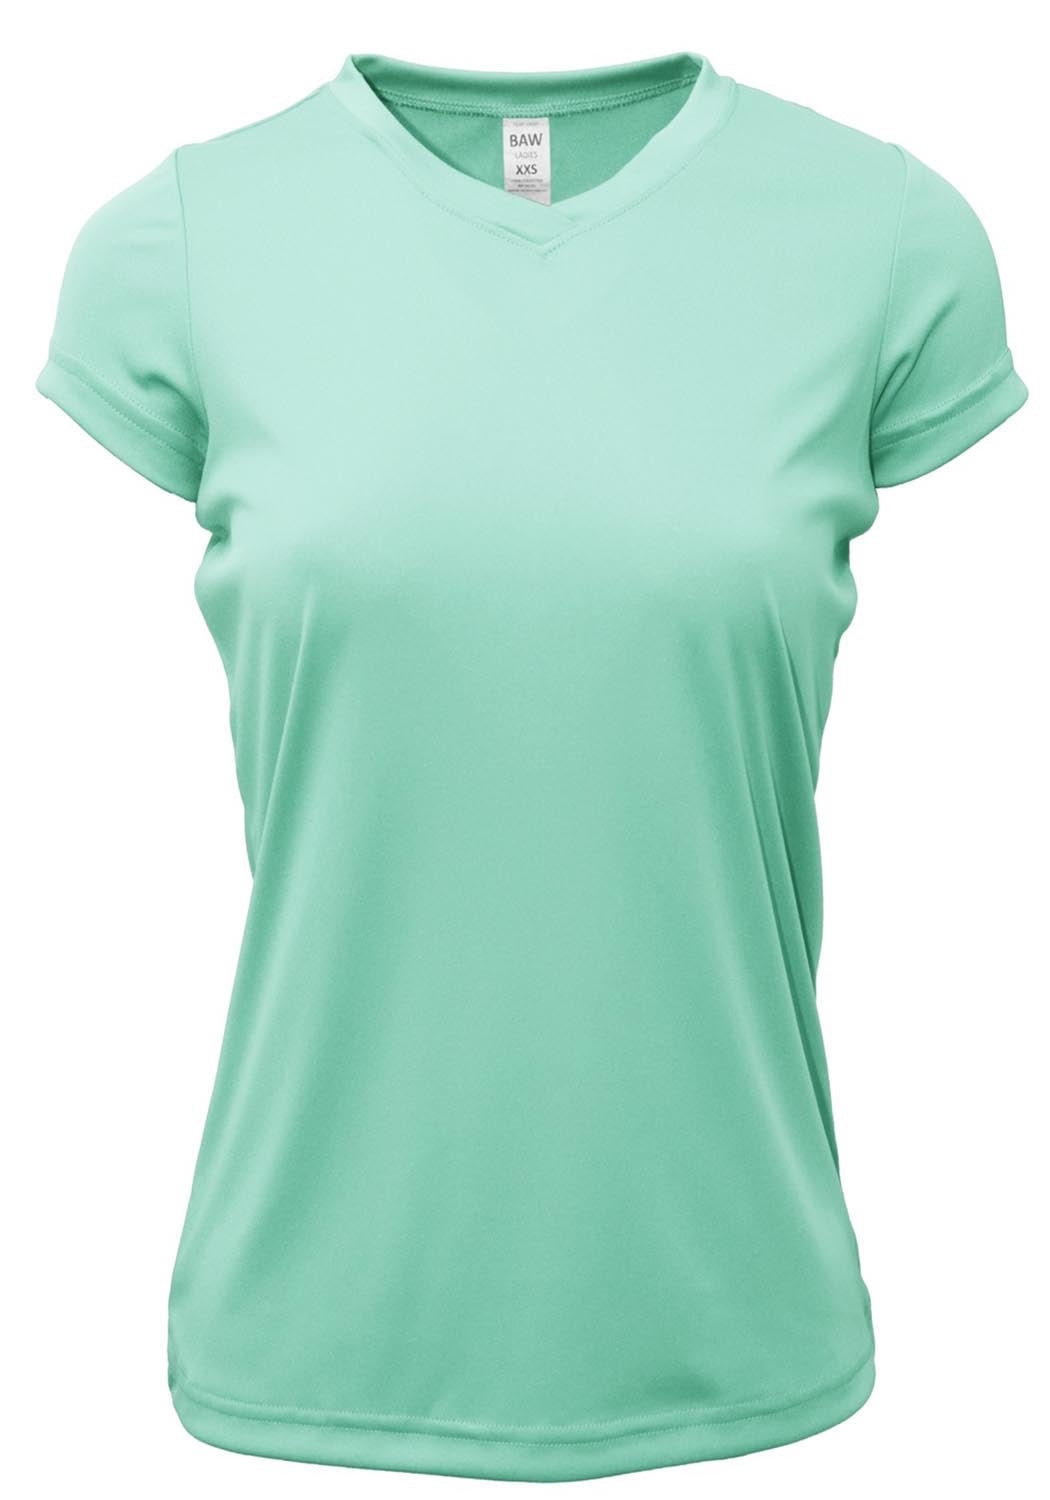 Marika Tek Dry-Wik T- shirt Mint Green/Blue Activewear Women's